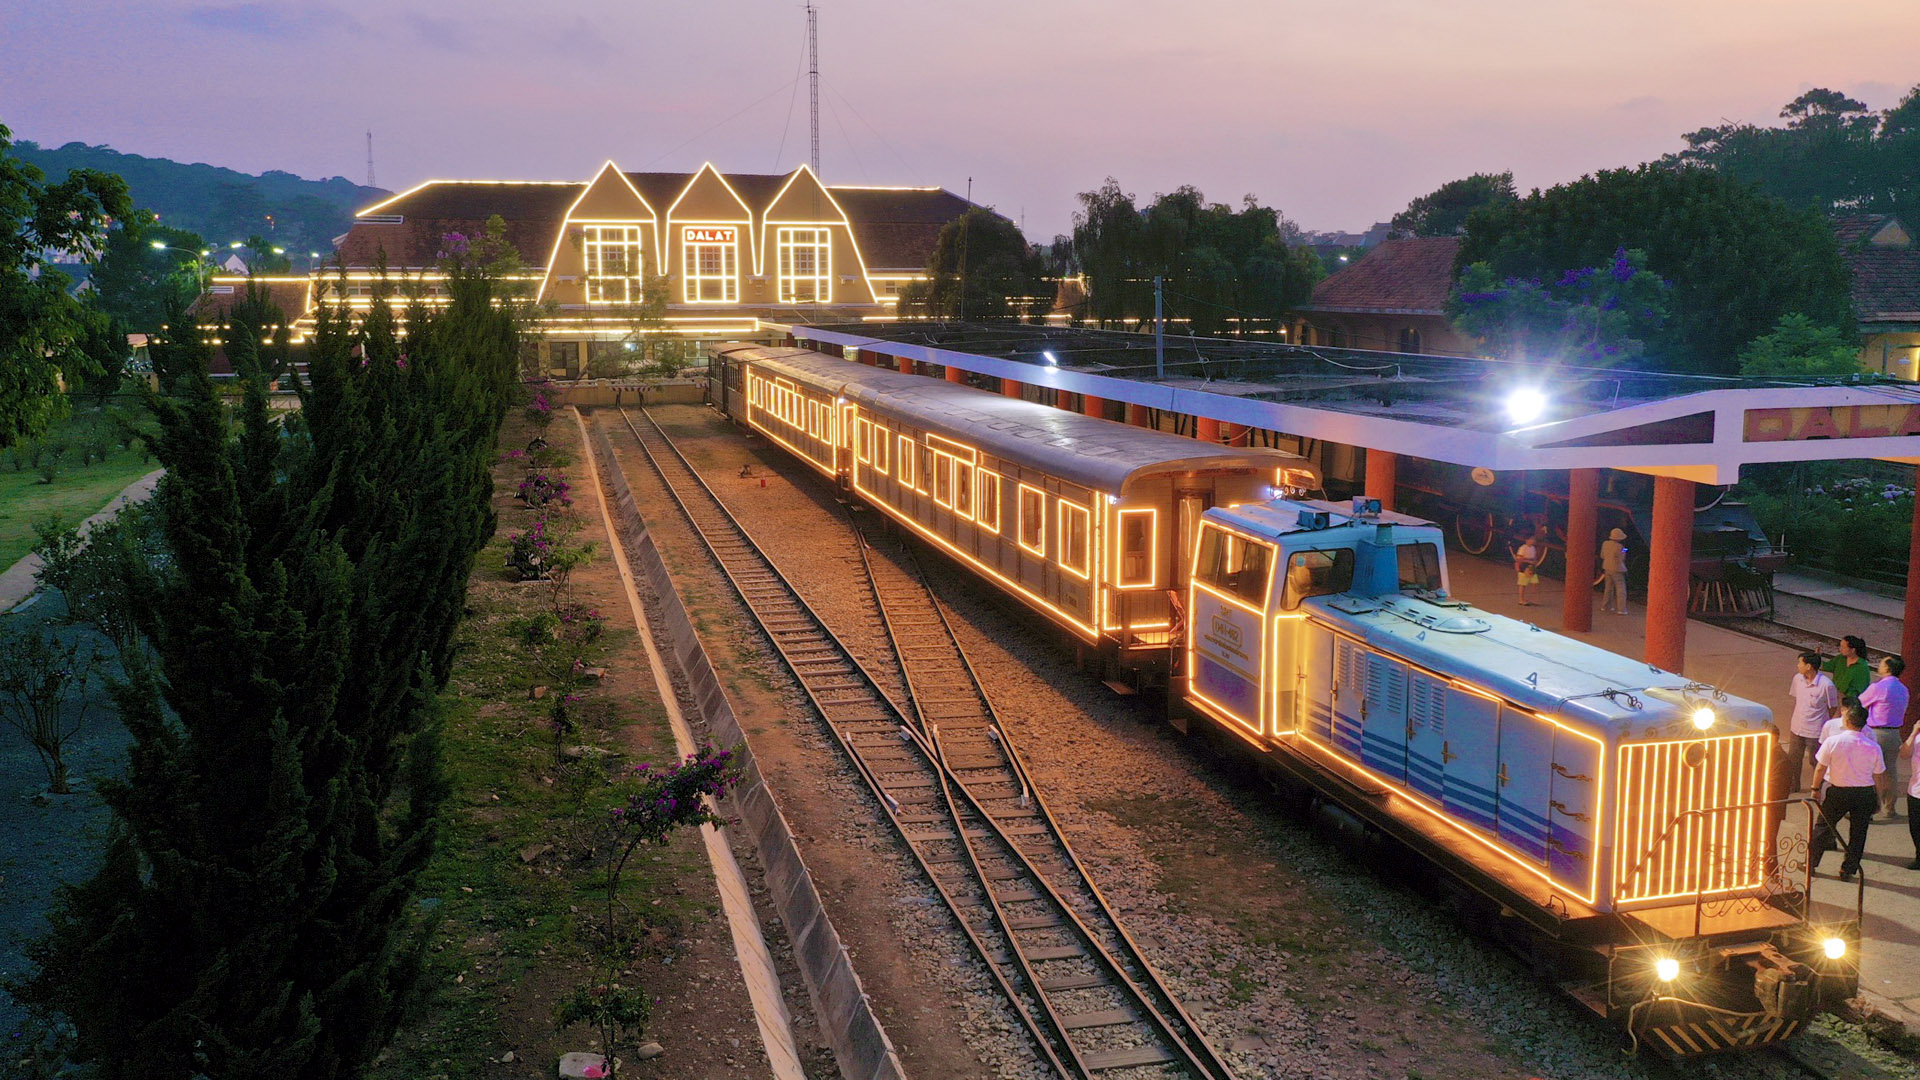 "Hành trình đêm Đà Lạt" bằng xe lửa cổ mang đến trải nghiệm thú vị cho du khách.